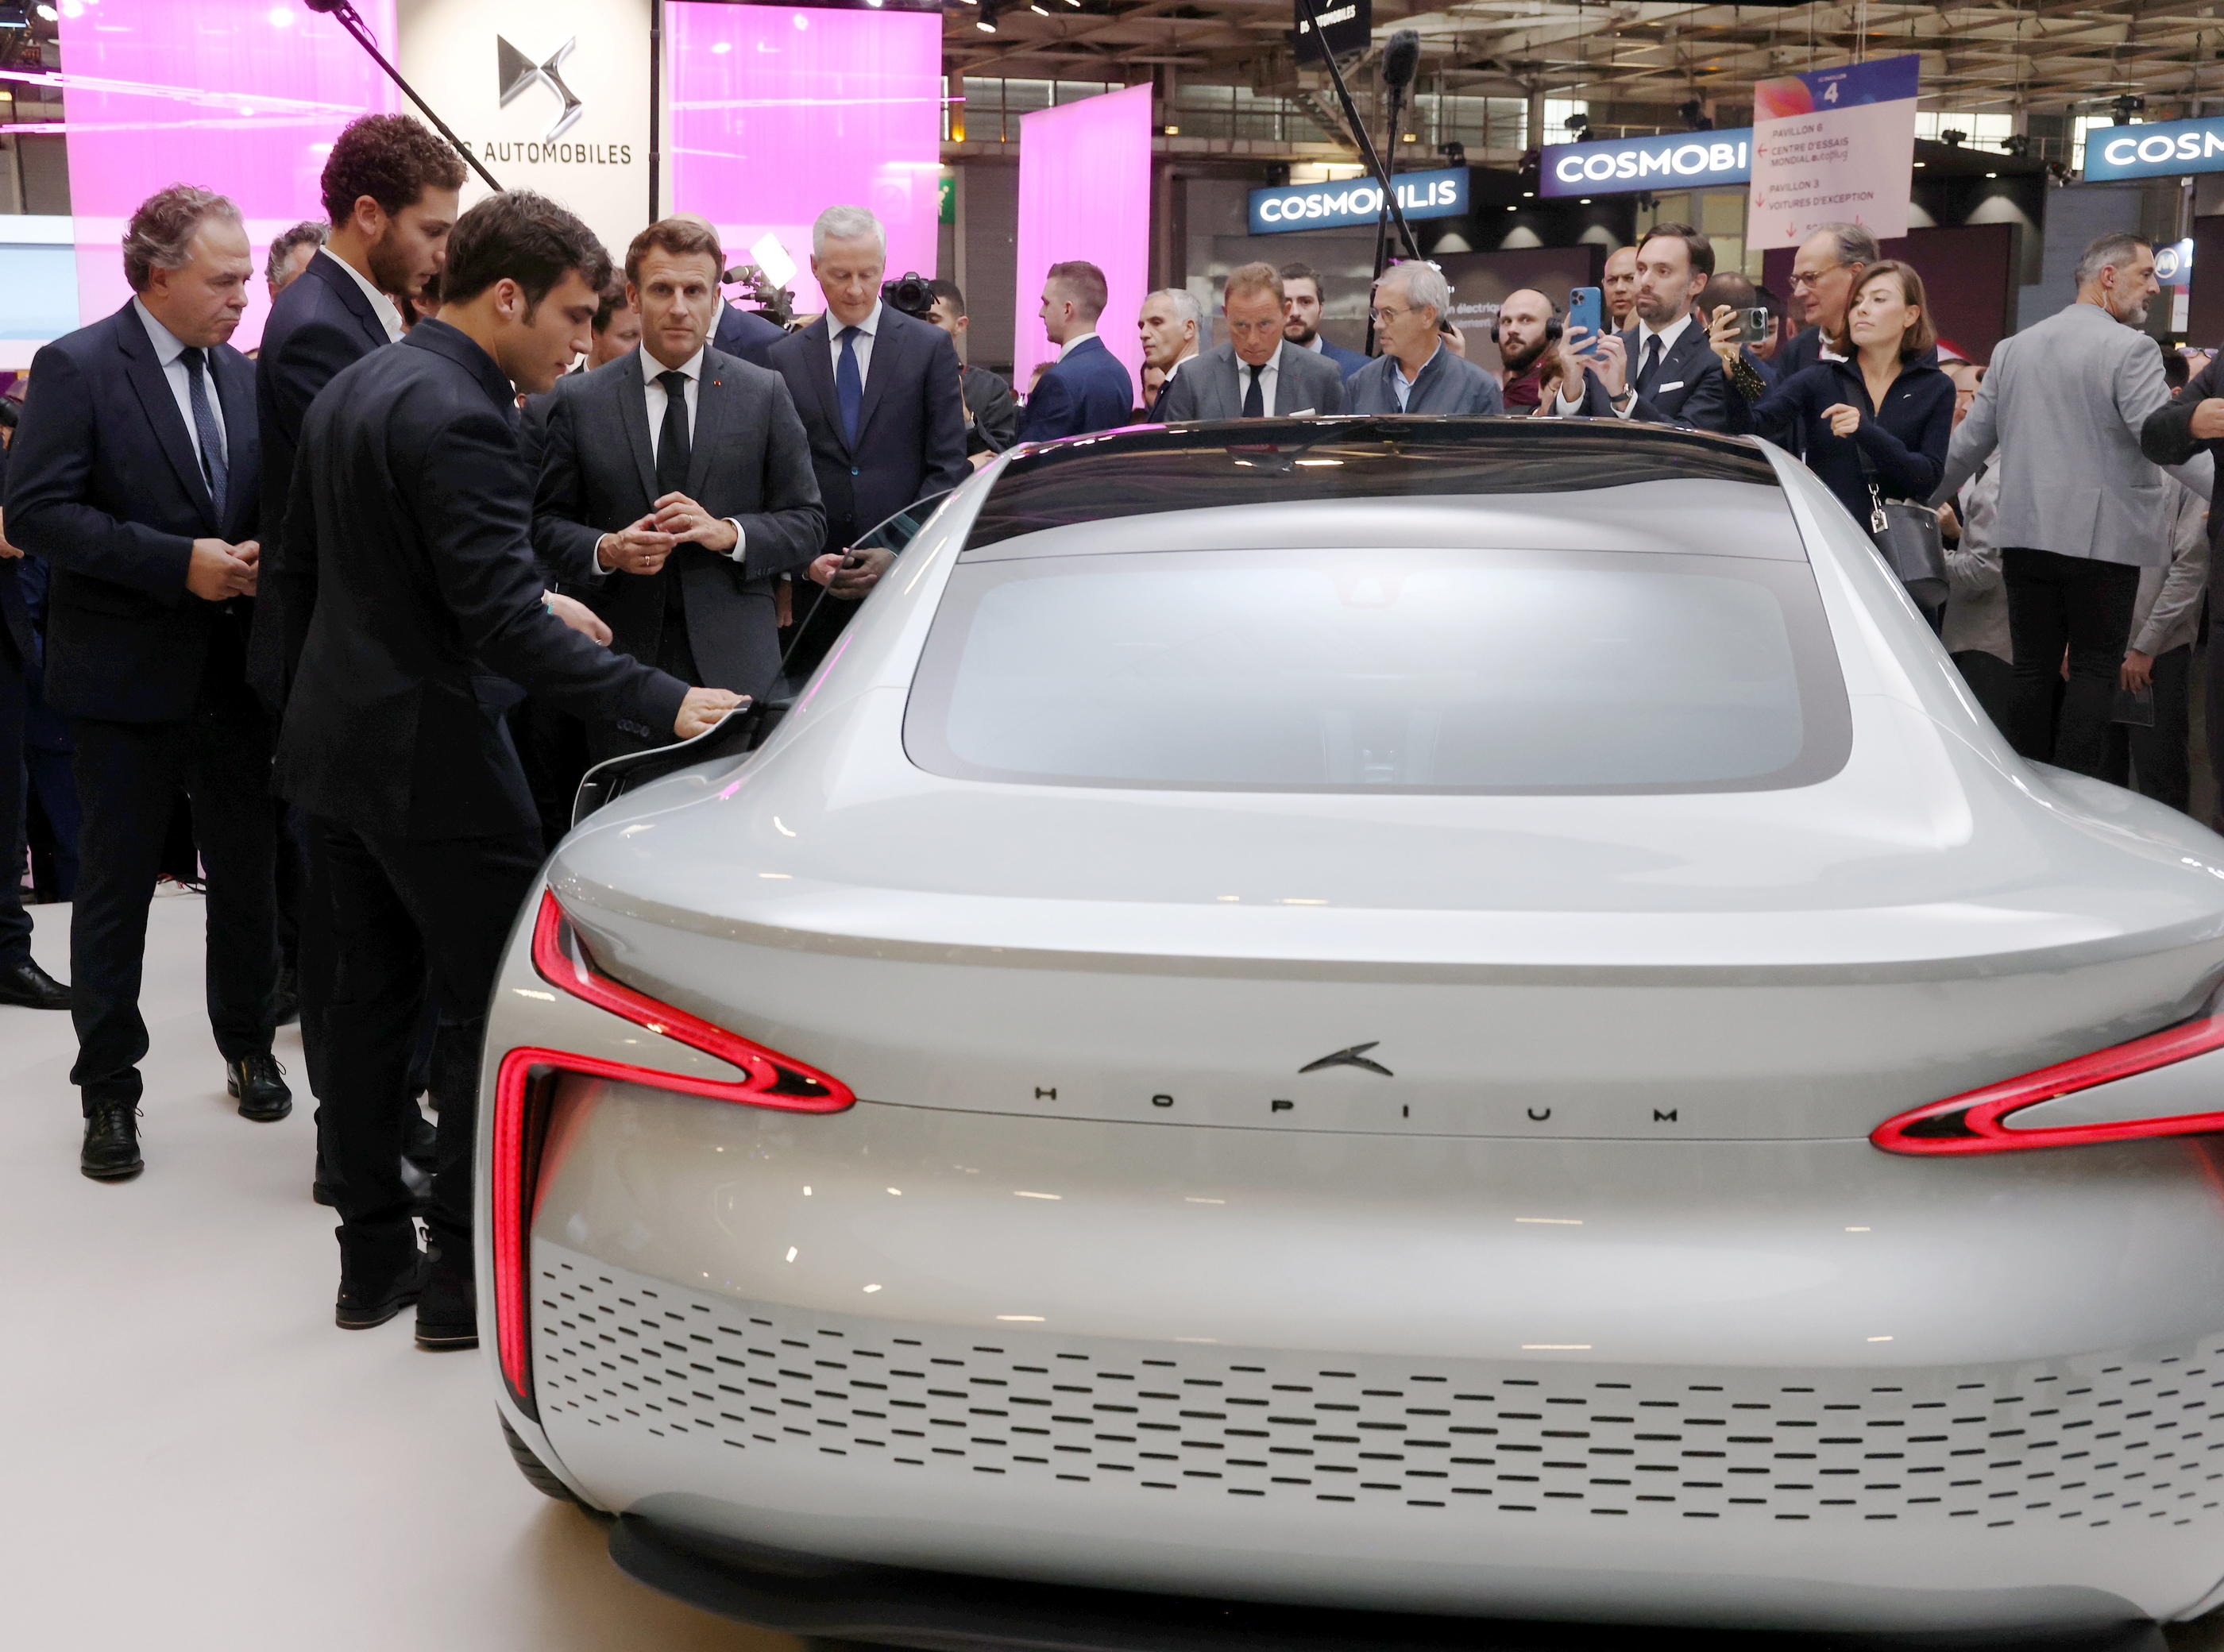 Au Salon de l’auto, Emmanuel Macron a évoqué une nécessaire «préférence européenne» pour soutenir l'industrie automobile du continent. LP/Olivier Lejeune